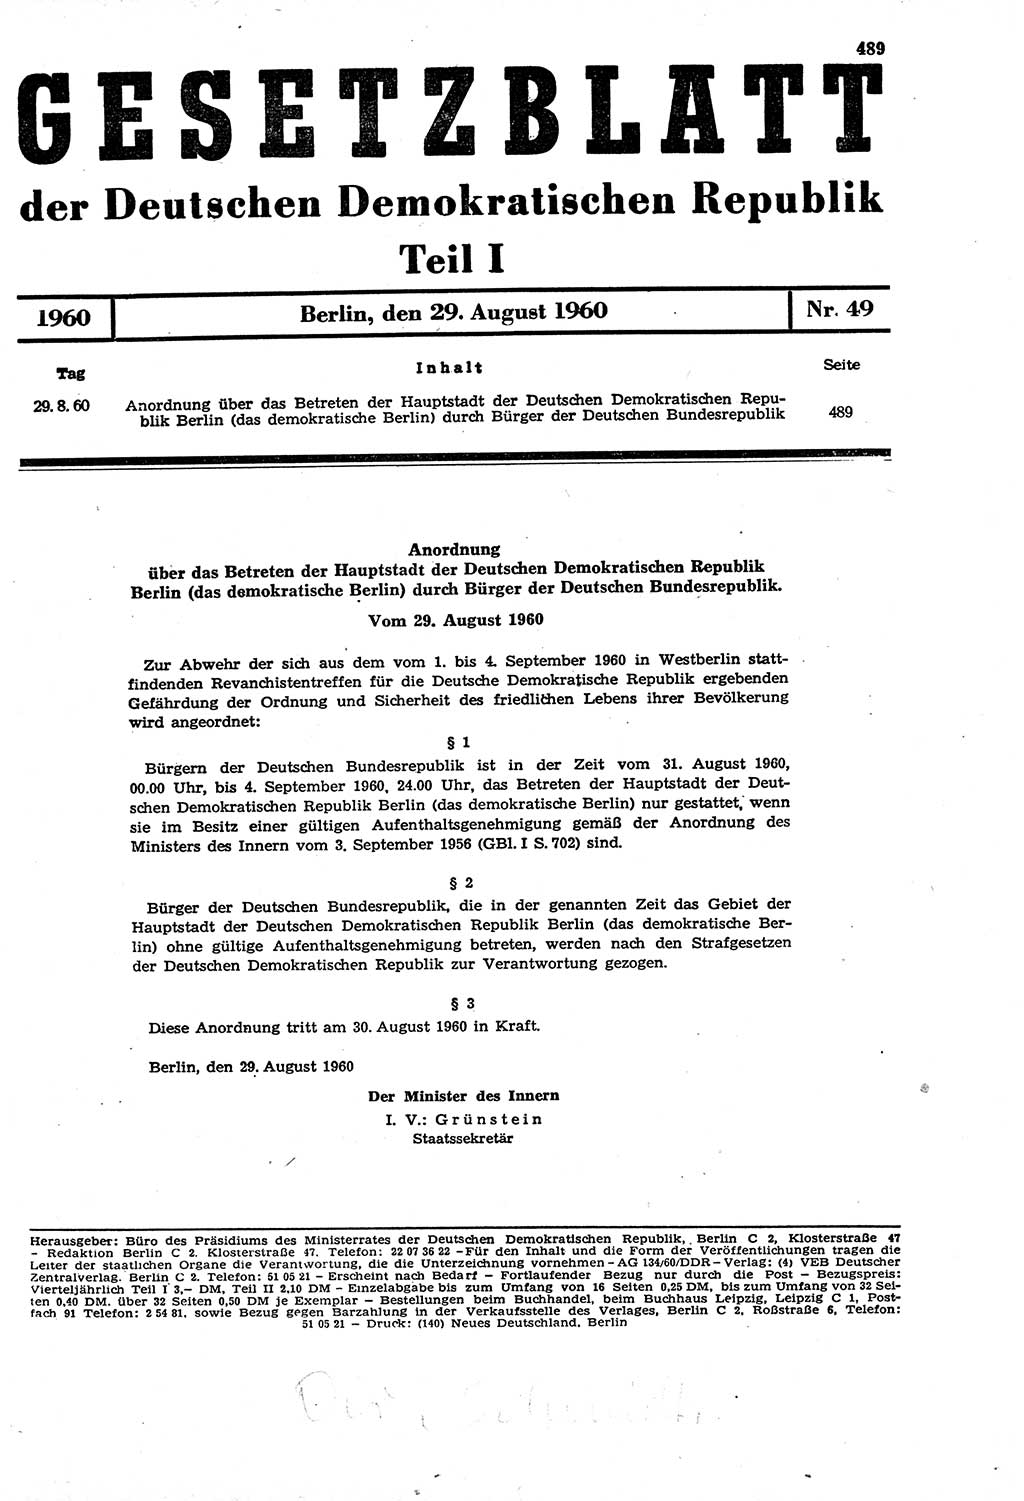 Gesetzblatt (GBl.) der Deutschen Demokratischen Republik (DDR) Teil Ⅰ 1960, Seite 489 (GBl. DDR Ⅰ 1960, S. 489)